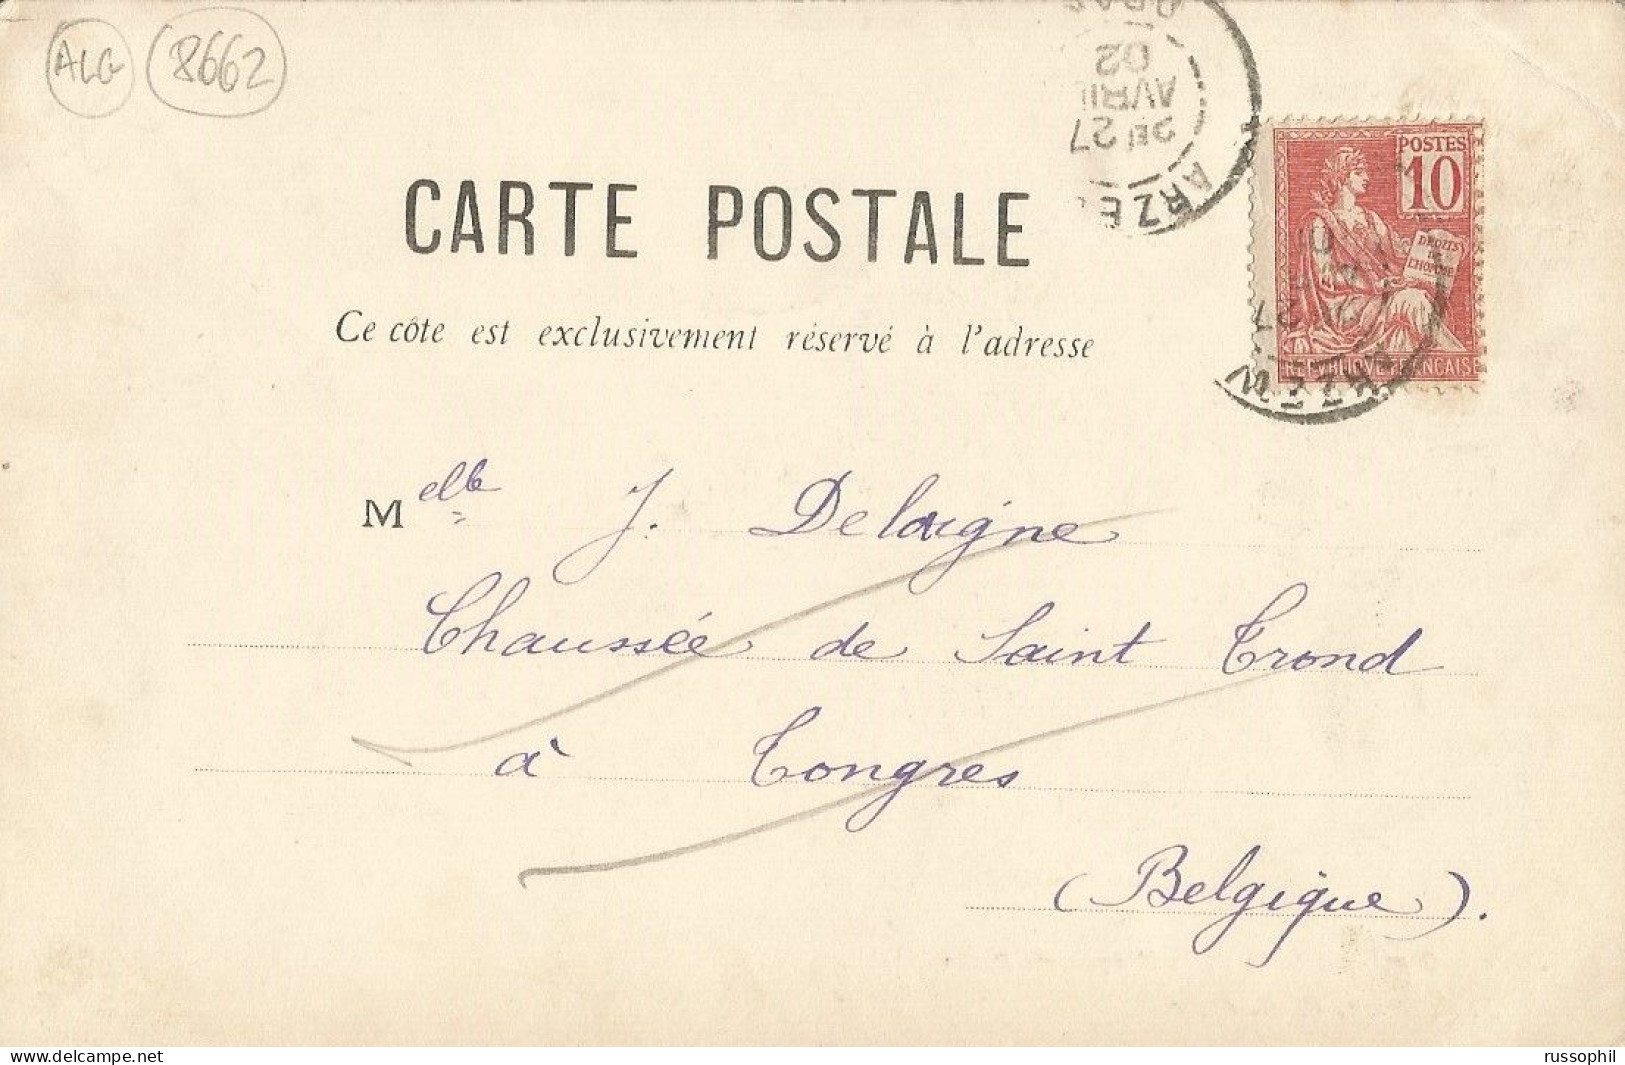 ALGERIE - ORAN - FONTAINE DE LA MOSQUEE DU PACHA - ED. GEISER REF #23 - 1902 - Oran